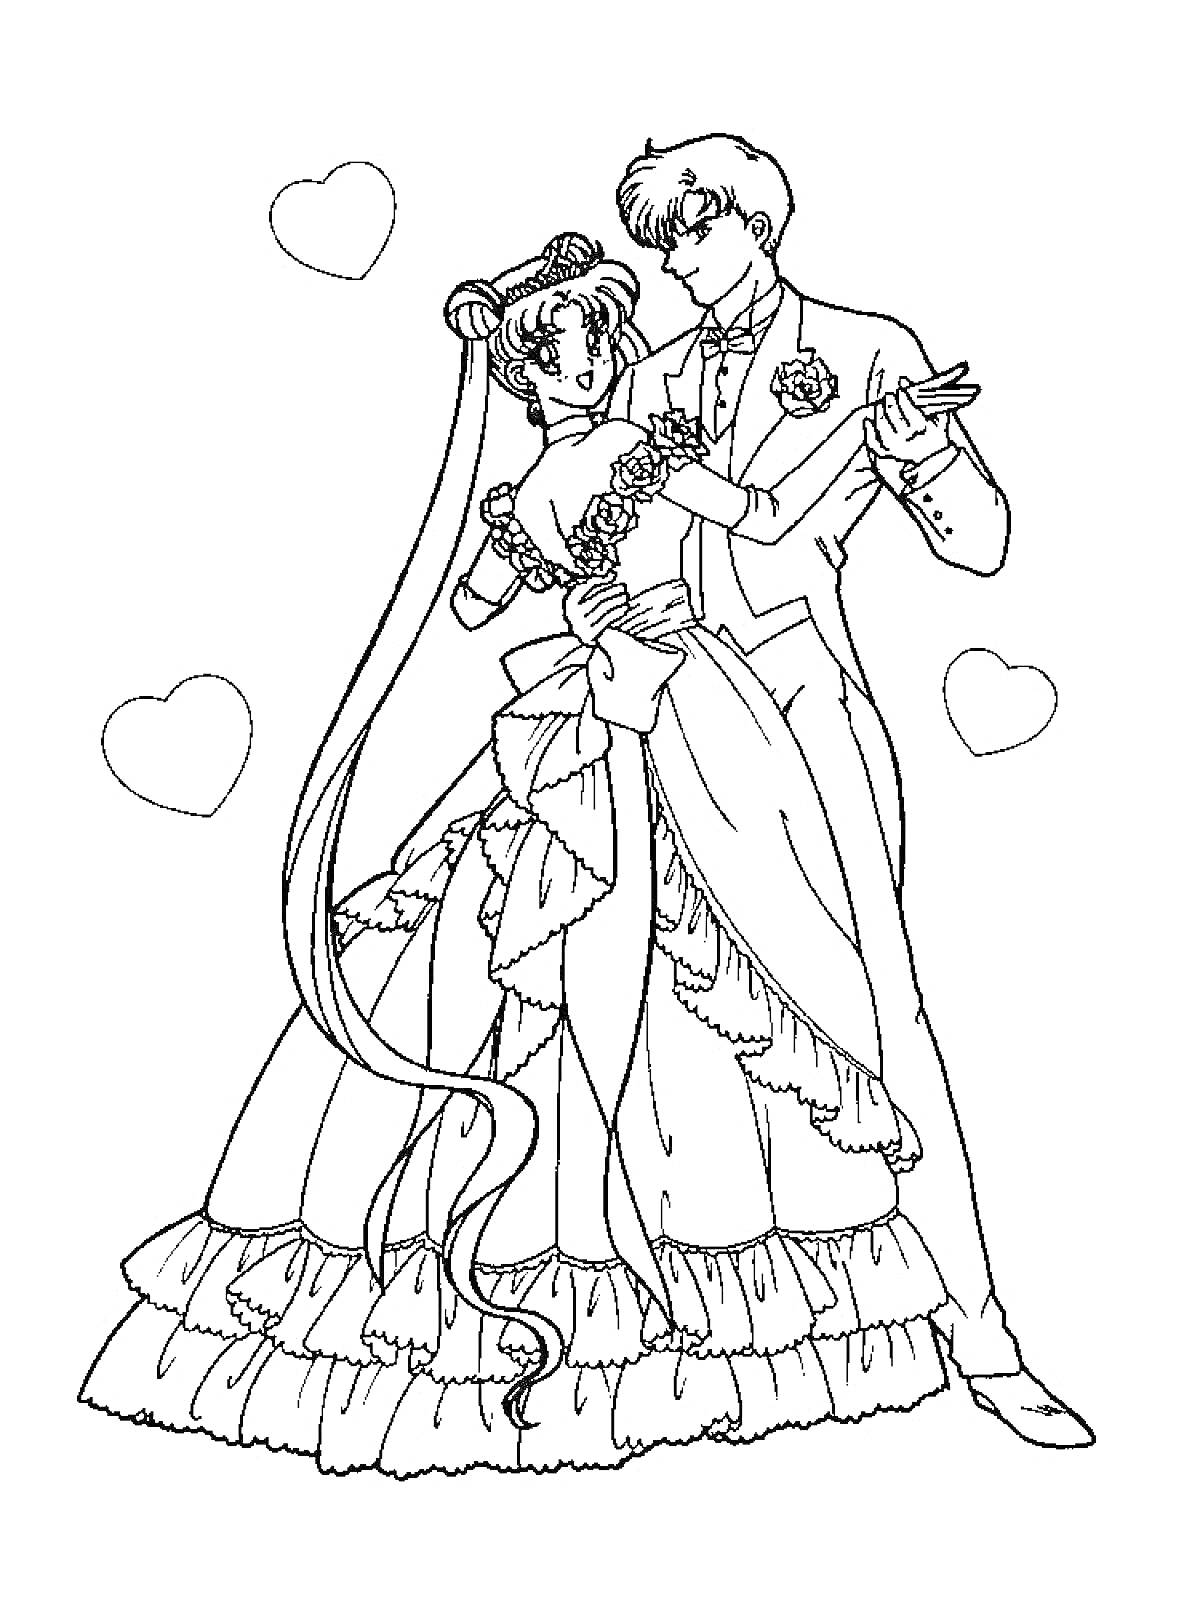 РаскраскаСейлор Мун и Тукседо Маск в свадебных нарядах с сердечками